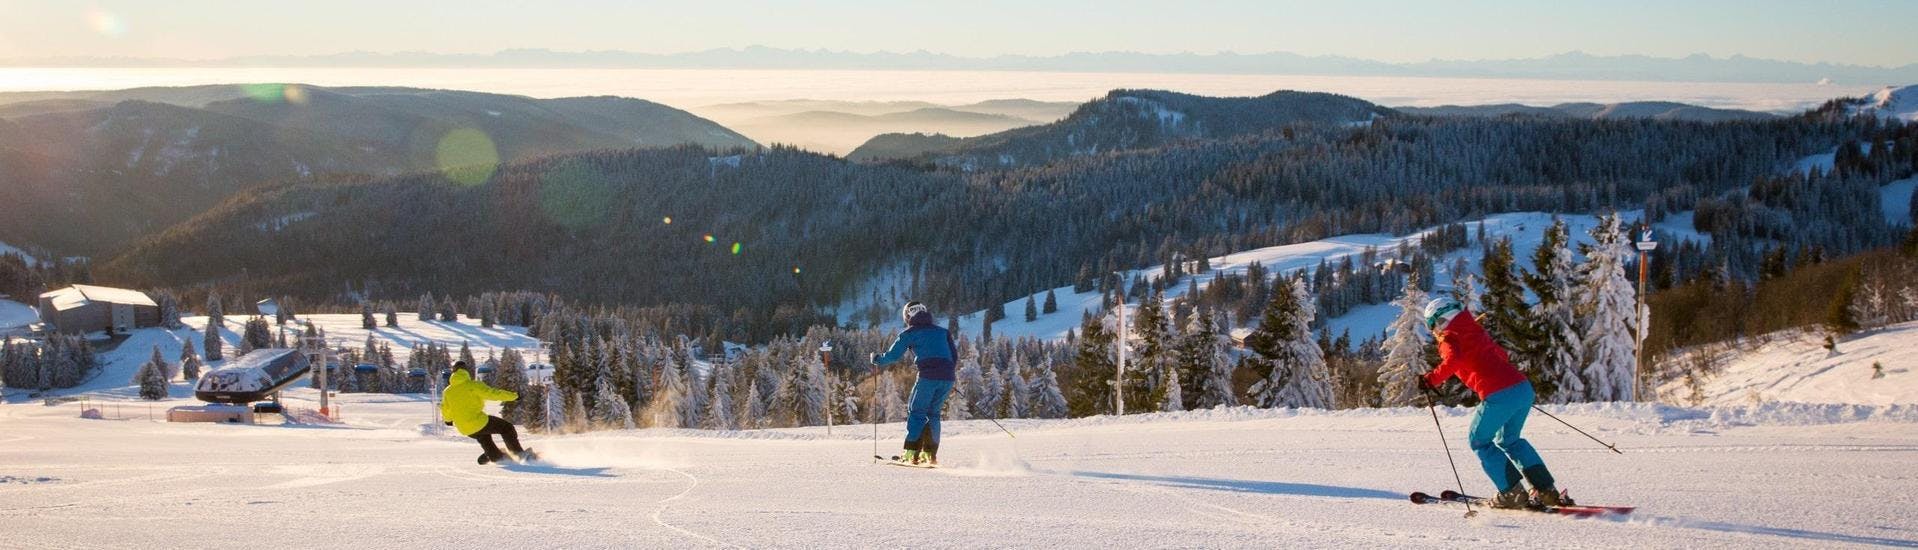 Zwei Skifahrer und ein Snowboarder ziehen auf der Skipiste in Feldberg im Schwarzwald, wo die örtlichen Skischulen ihre Skikurse anbieten, ihre Spuren.